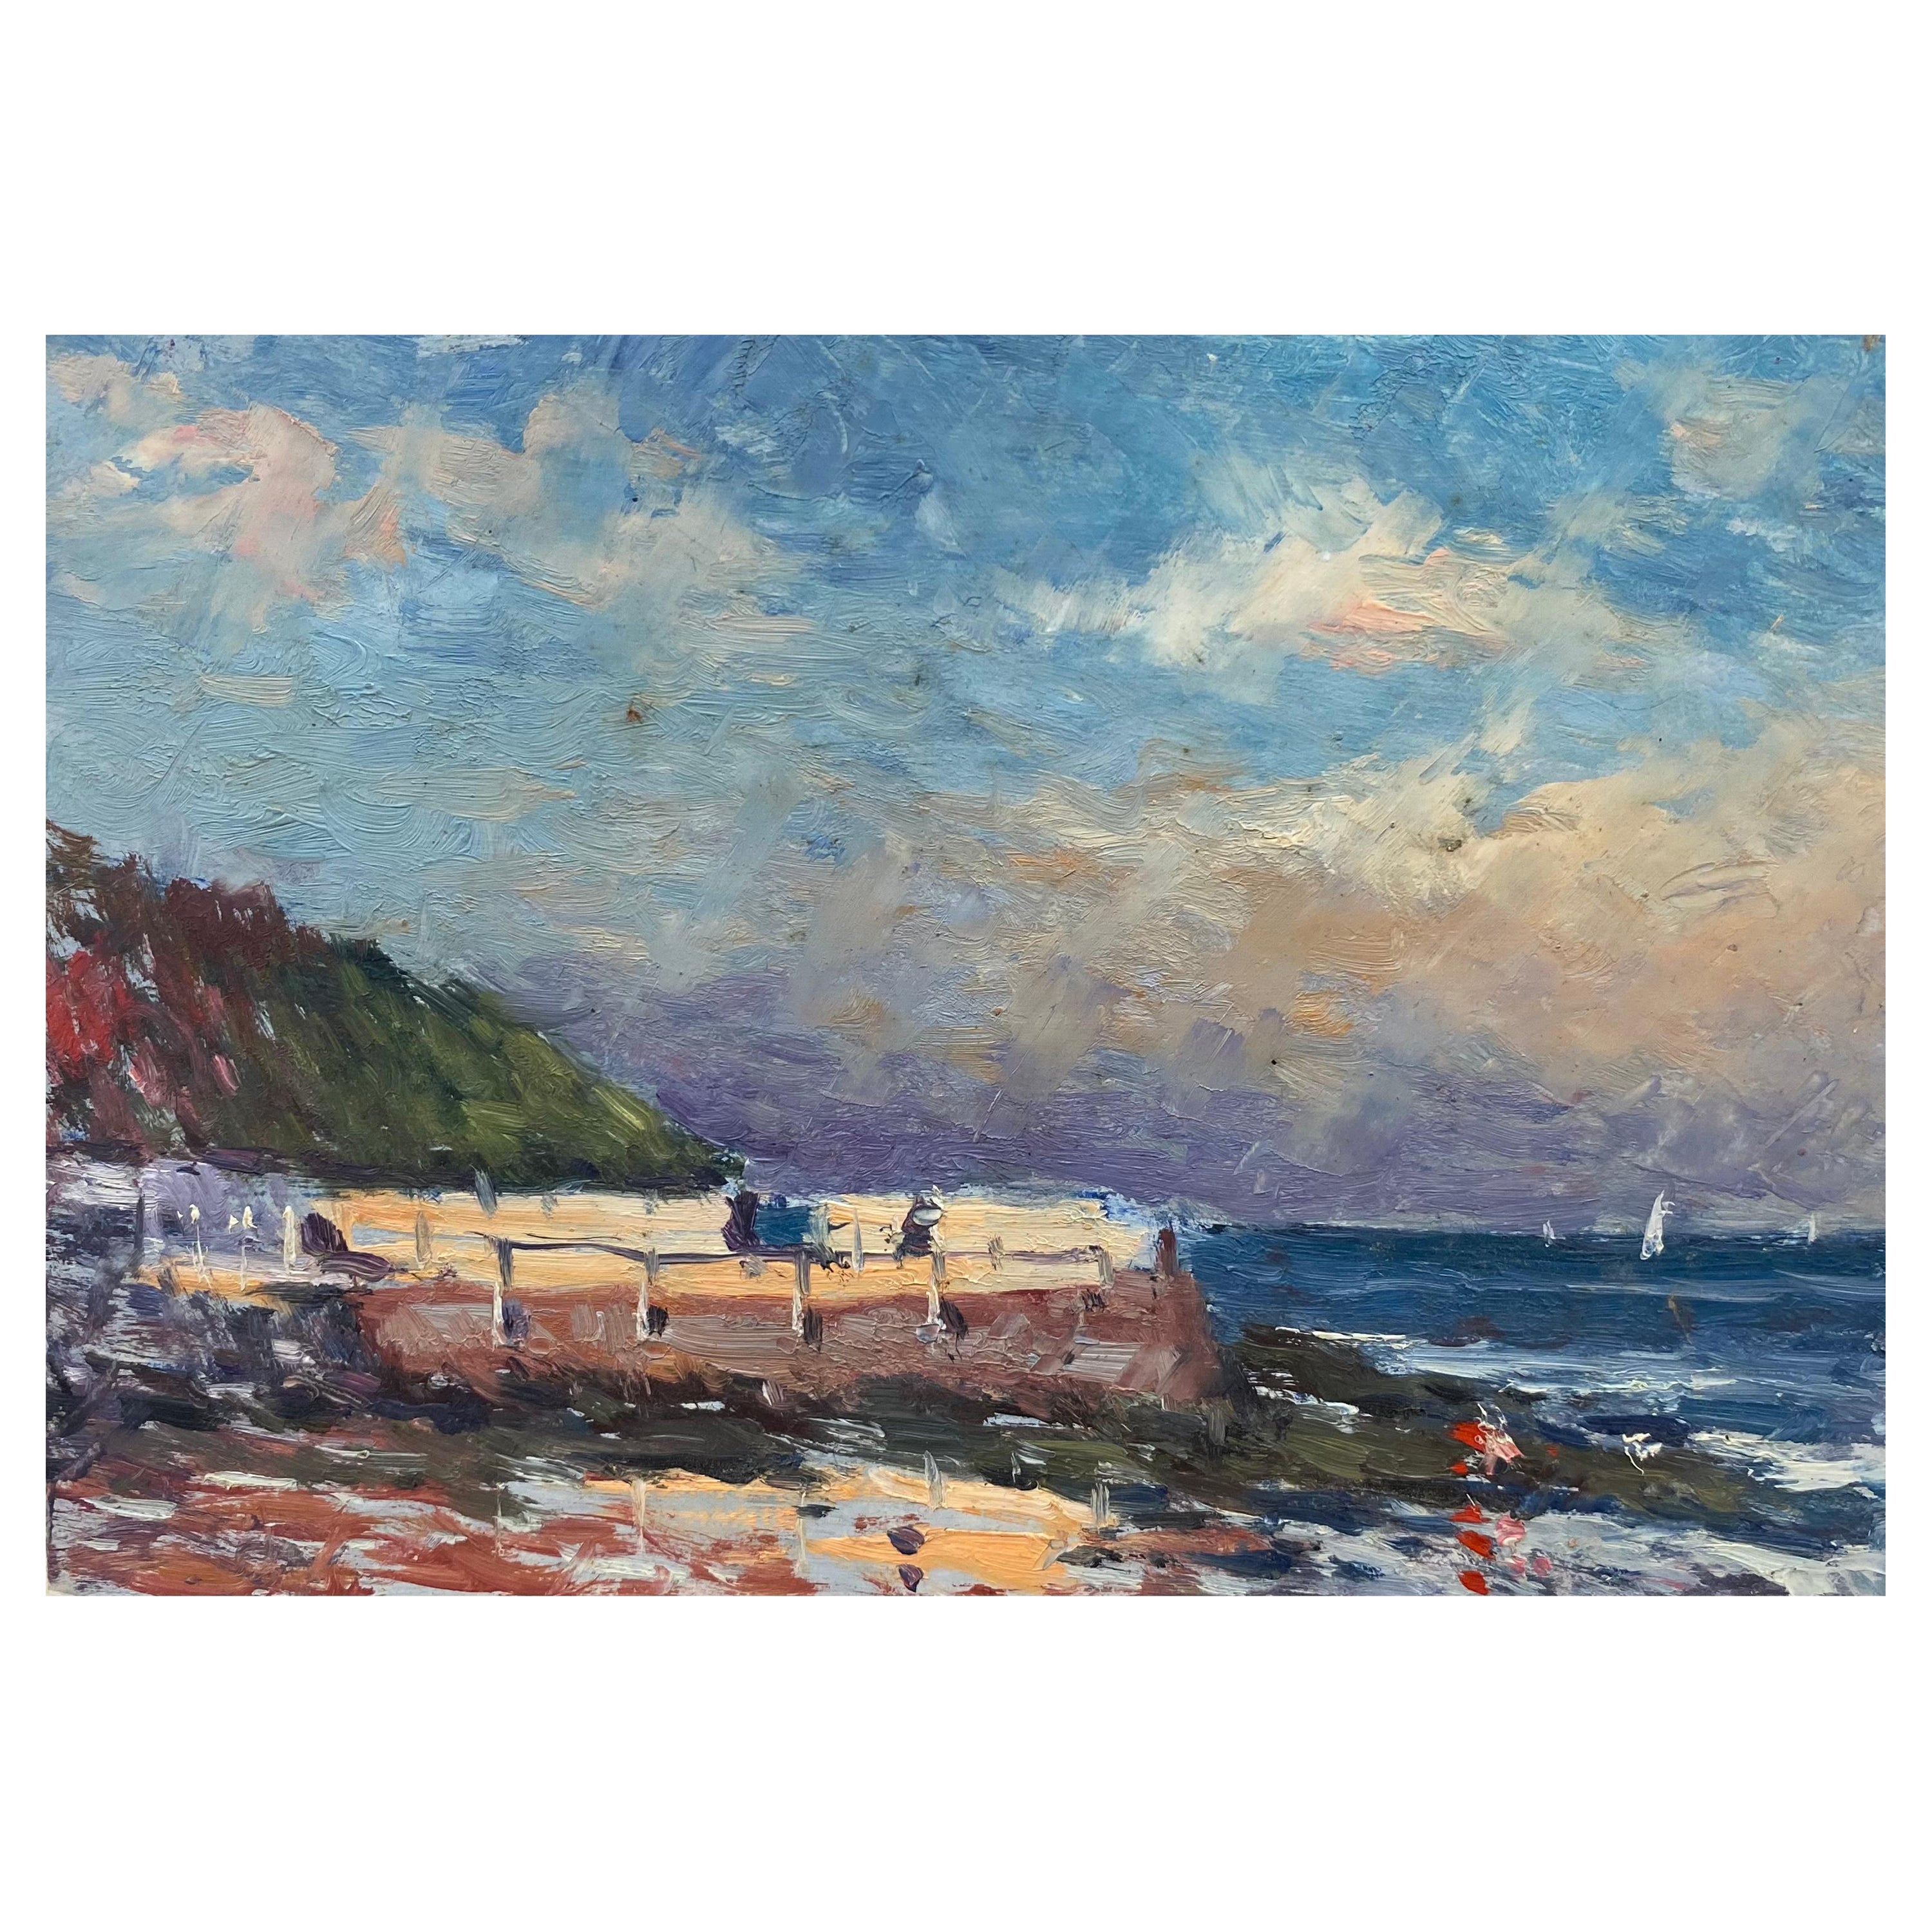 Paysage à l'huile impressionniste français, beau paysage de plage océanique en Californie